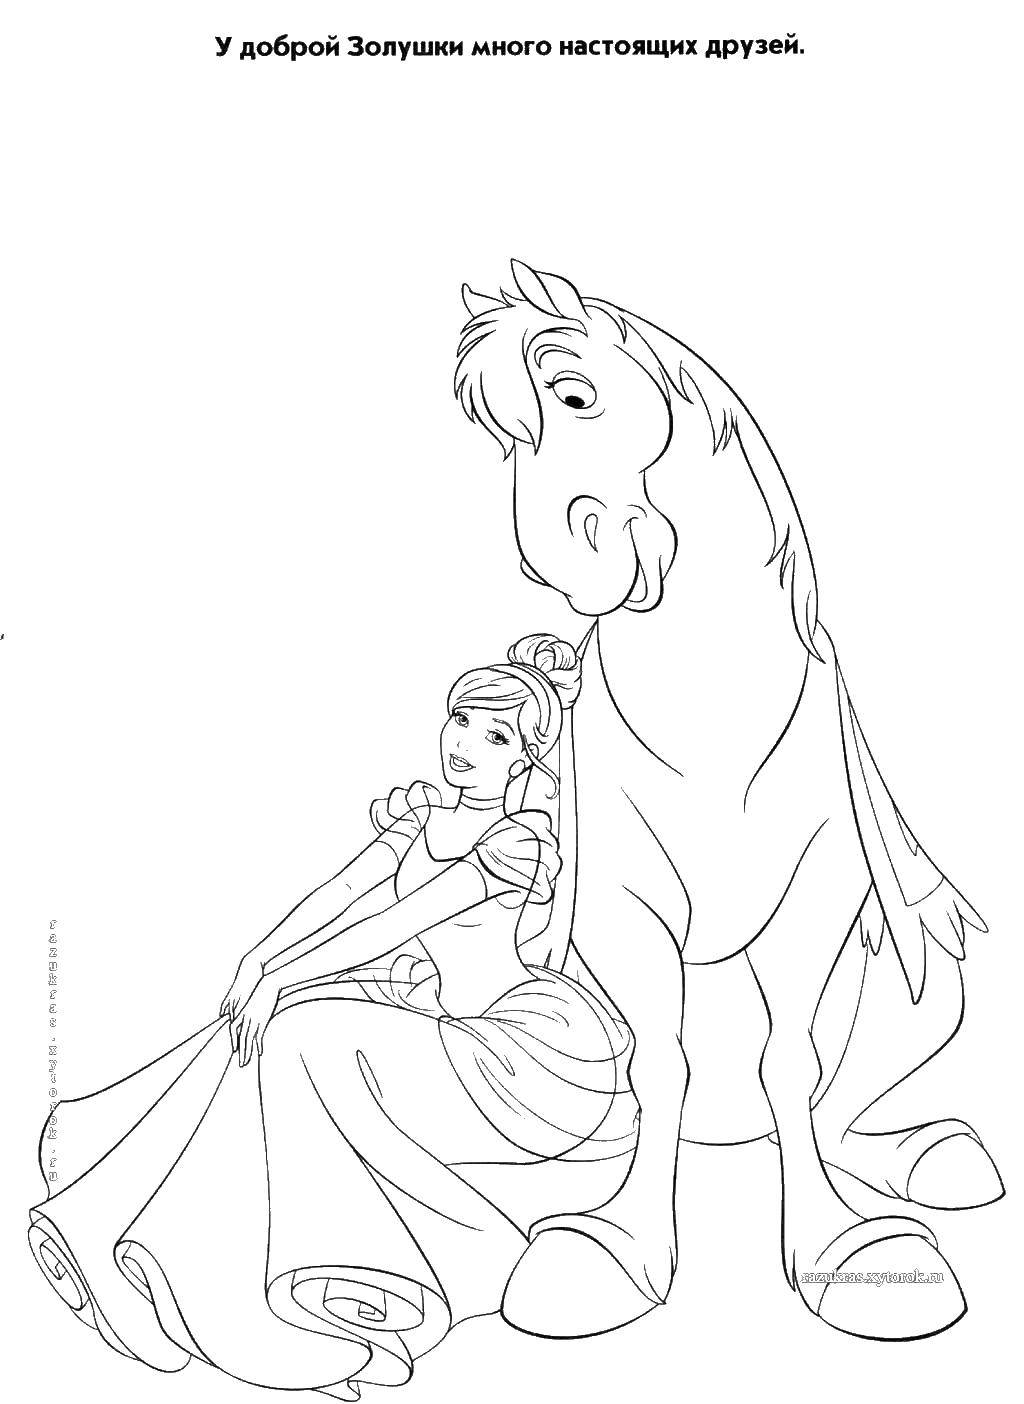 Coloring Cinderella with horse. Category Cinderella. Tags:  Cinderella, horse.